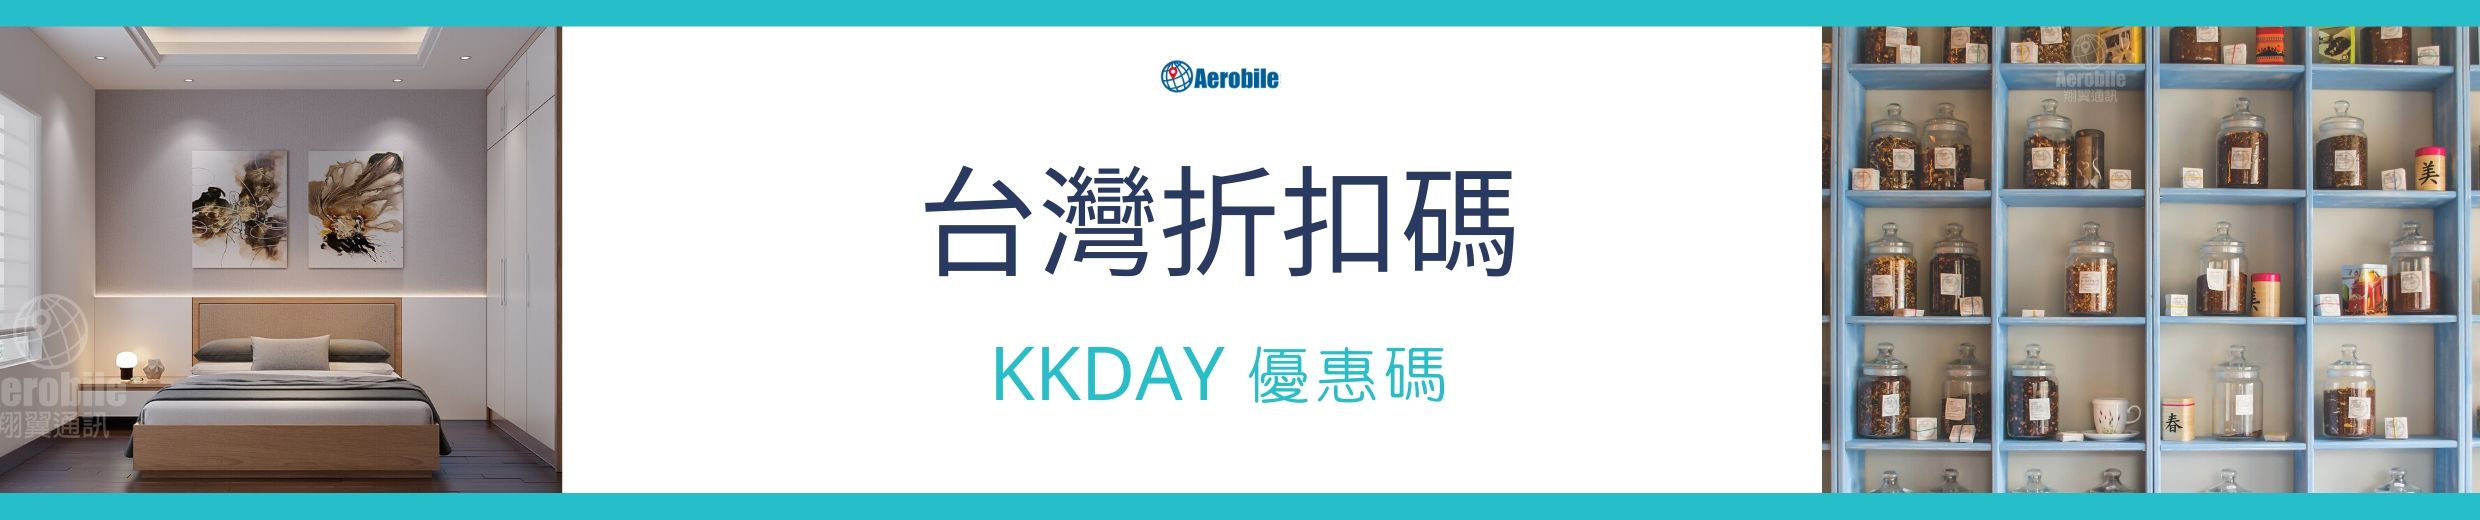 KKDAY-台灣折扣碼-信用卡優惠